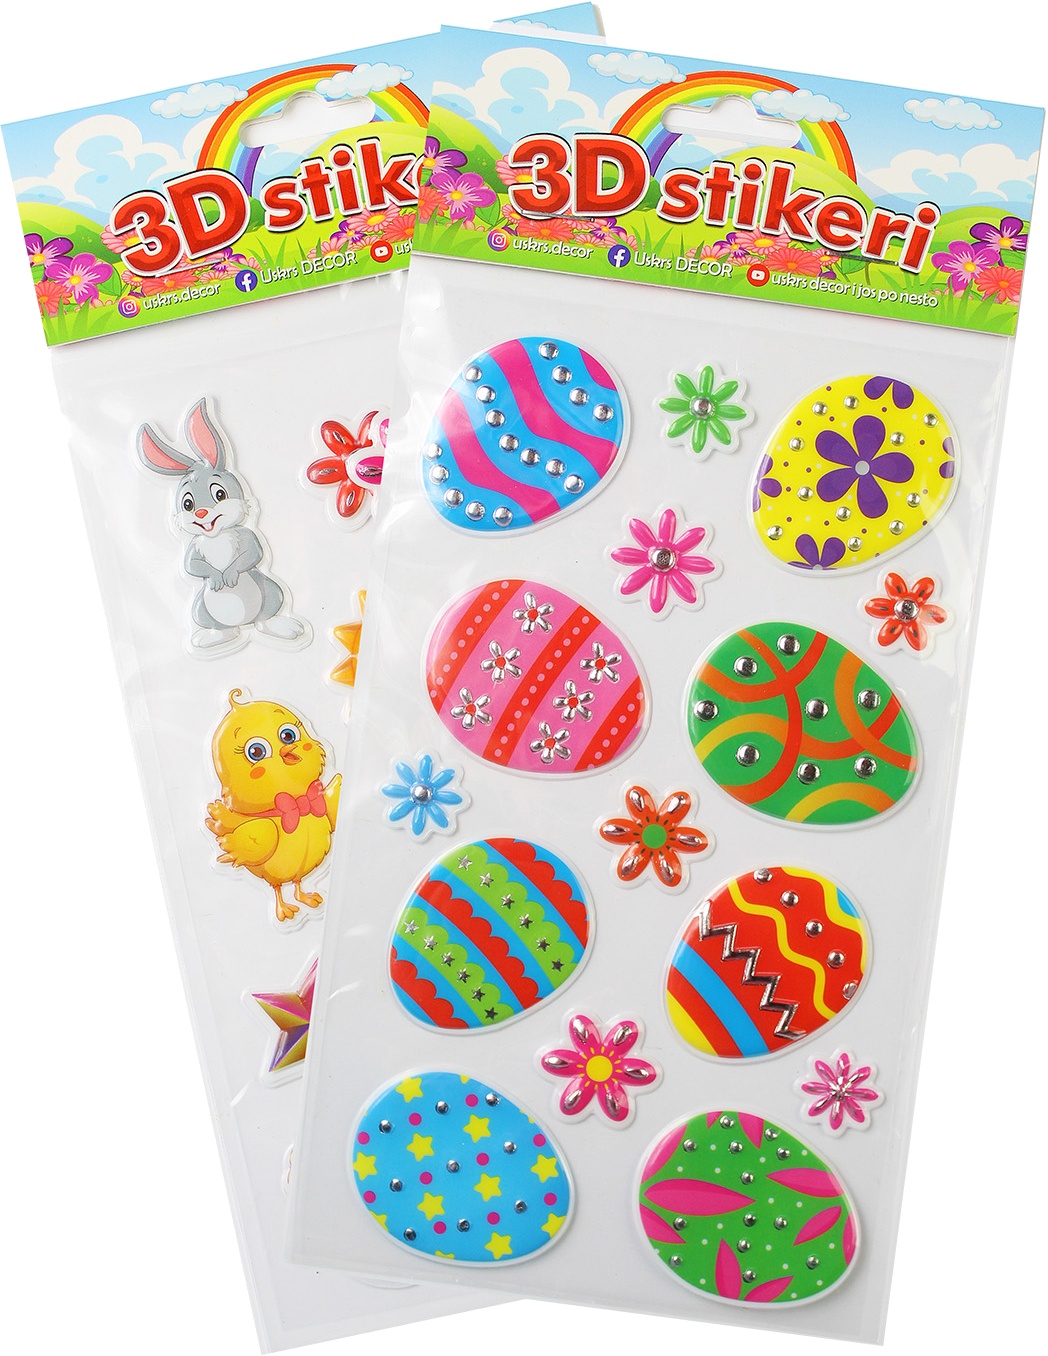 Slika za 3D stikeri za jaja, 1kom